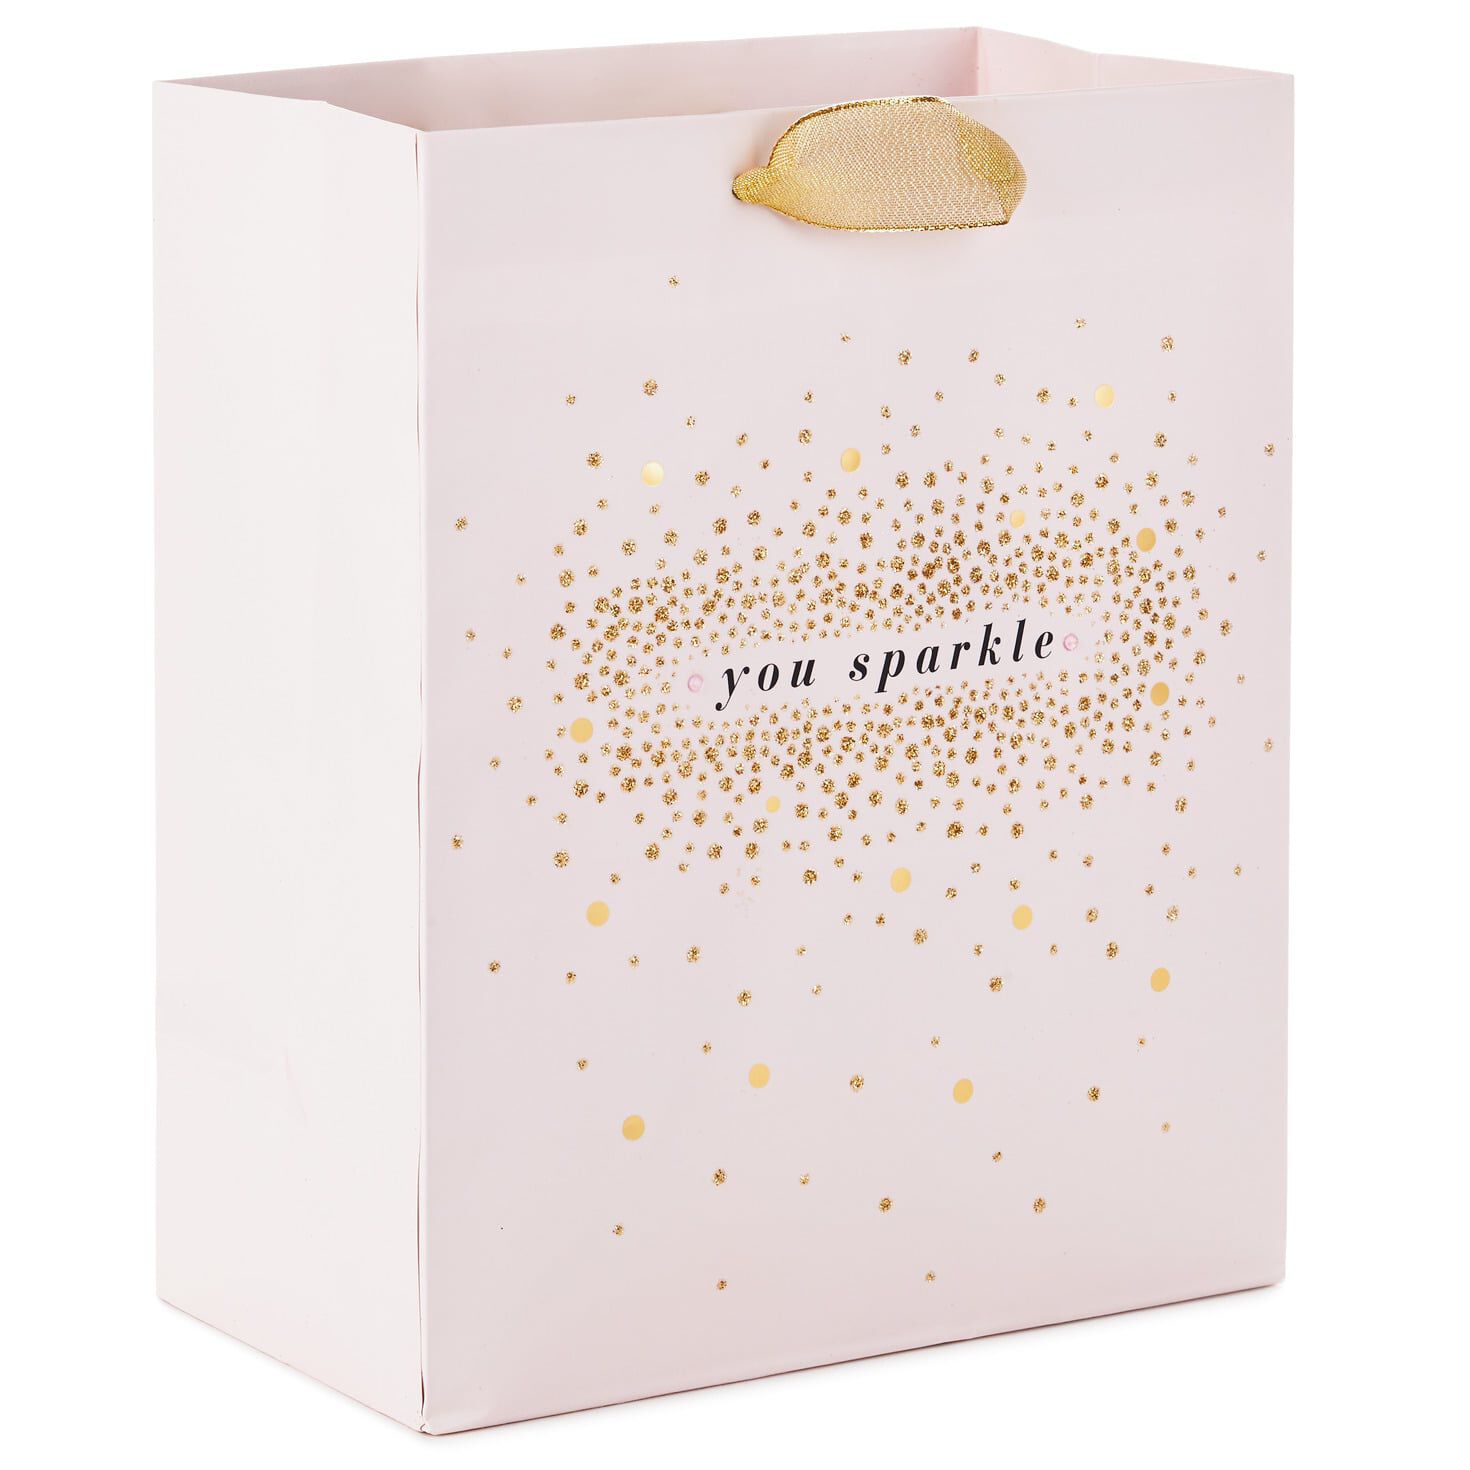 Blush & Gold Splatter Small Gift Bag